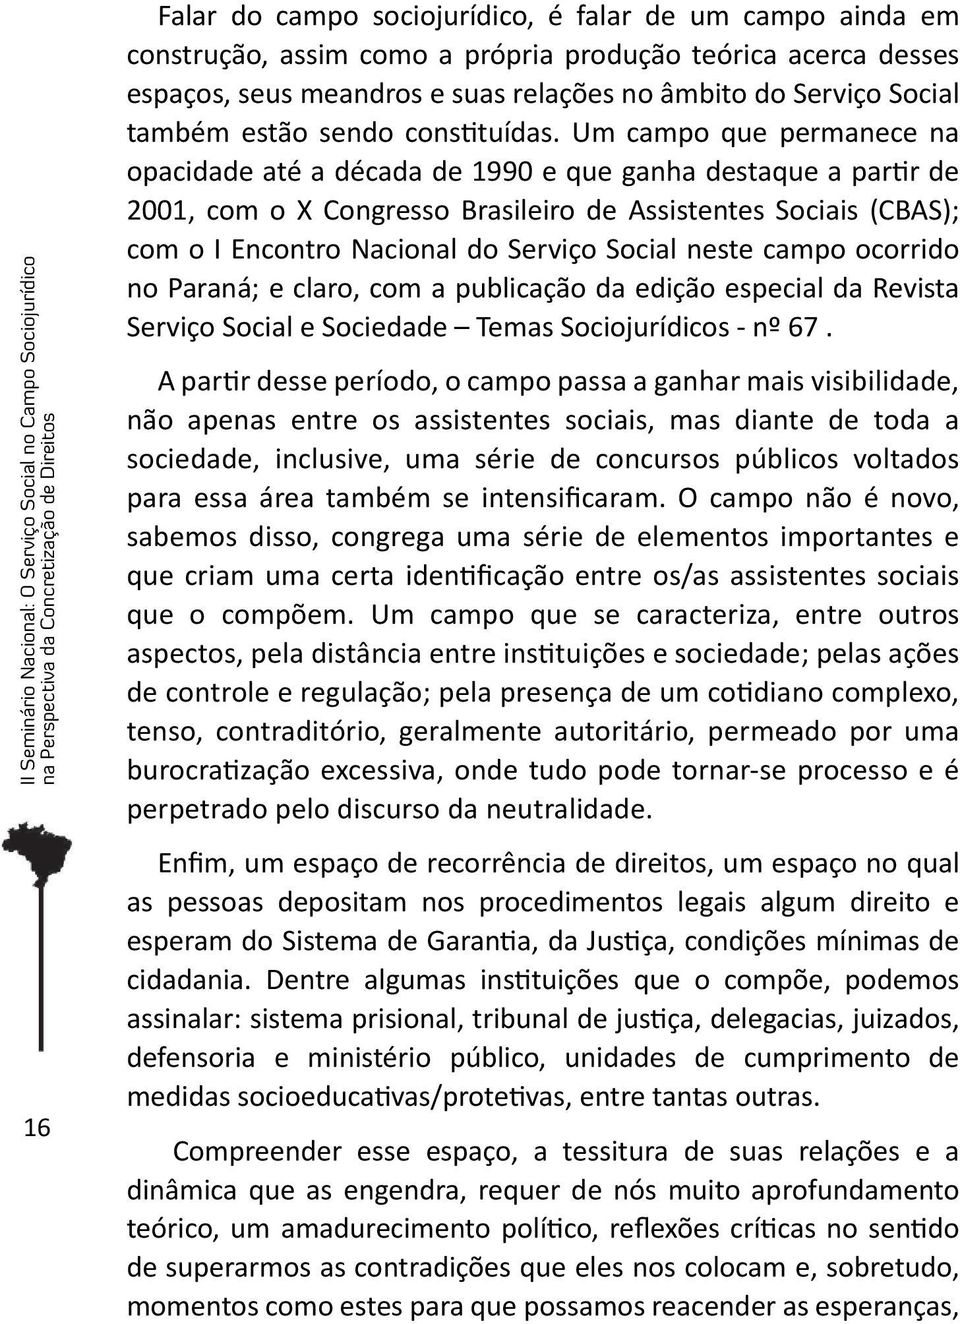 Um campo que permanece na opacidade até a década de 1990 e que ganha destaque a partir de 2001, com o X Congresso Brasileiro de Assistentes Sociais (CBAS); com o I Encontro Nacional do Serviço Social